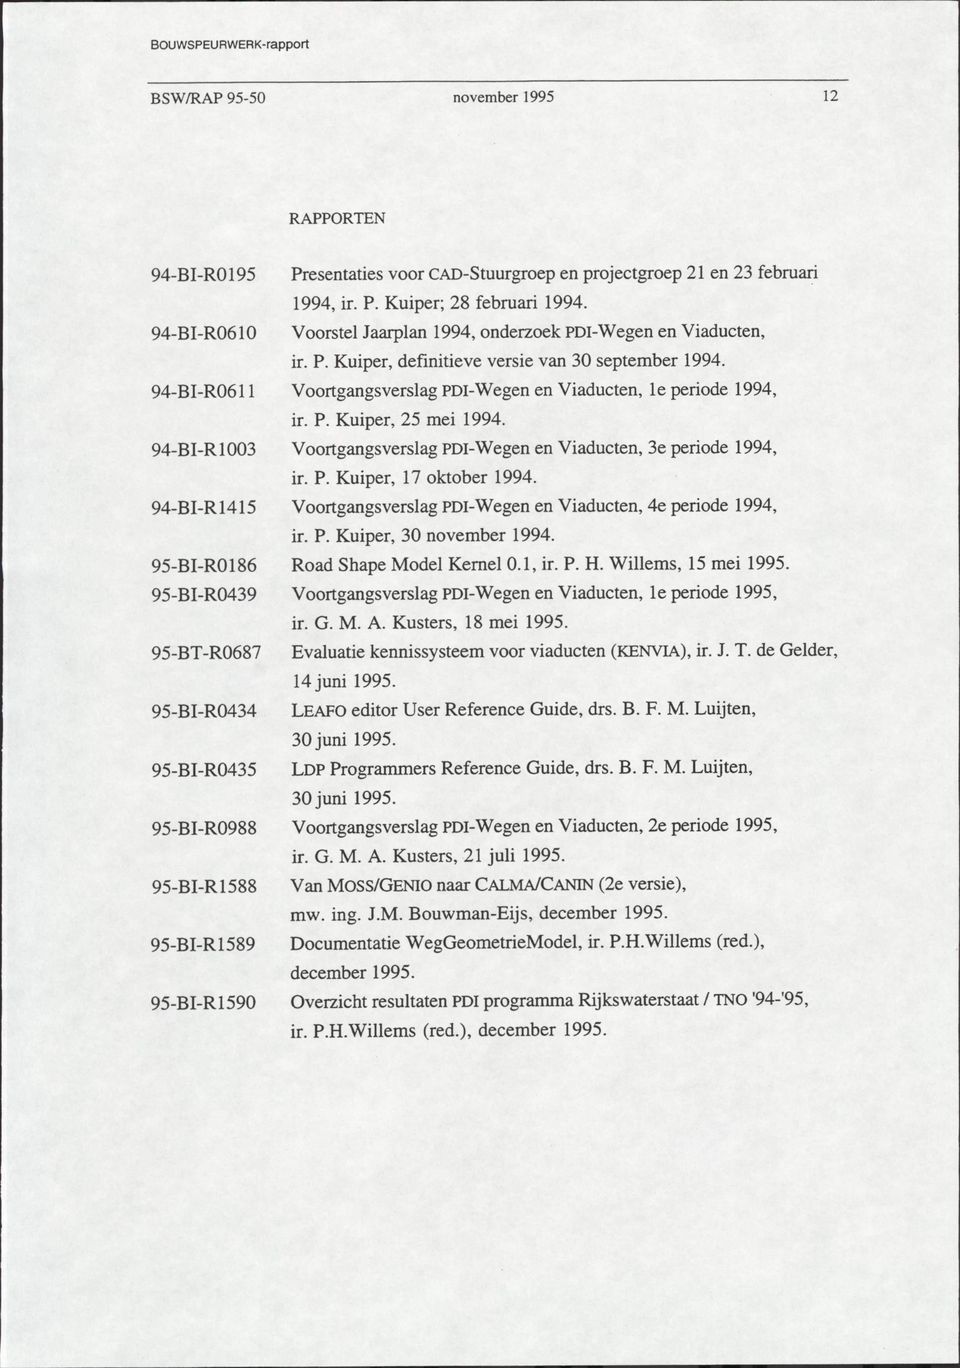 94-BI-R0611 Voortgangsverslag PDI-Wegen en Viaducten, le periode 1994, ir. P. Kuiper, 25 mei 1994. 94-BI-R1003 Voortgangsverslag PDI-Wegen en Viaducten, 3e periode 1994, ir. P. Kuiper, 17 oktober 1994.